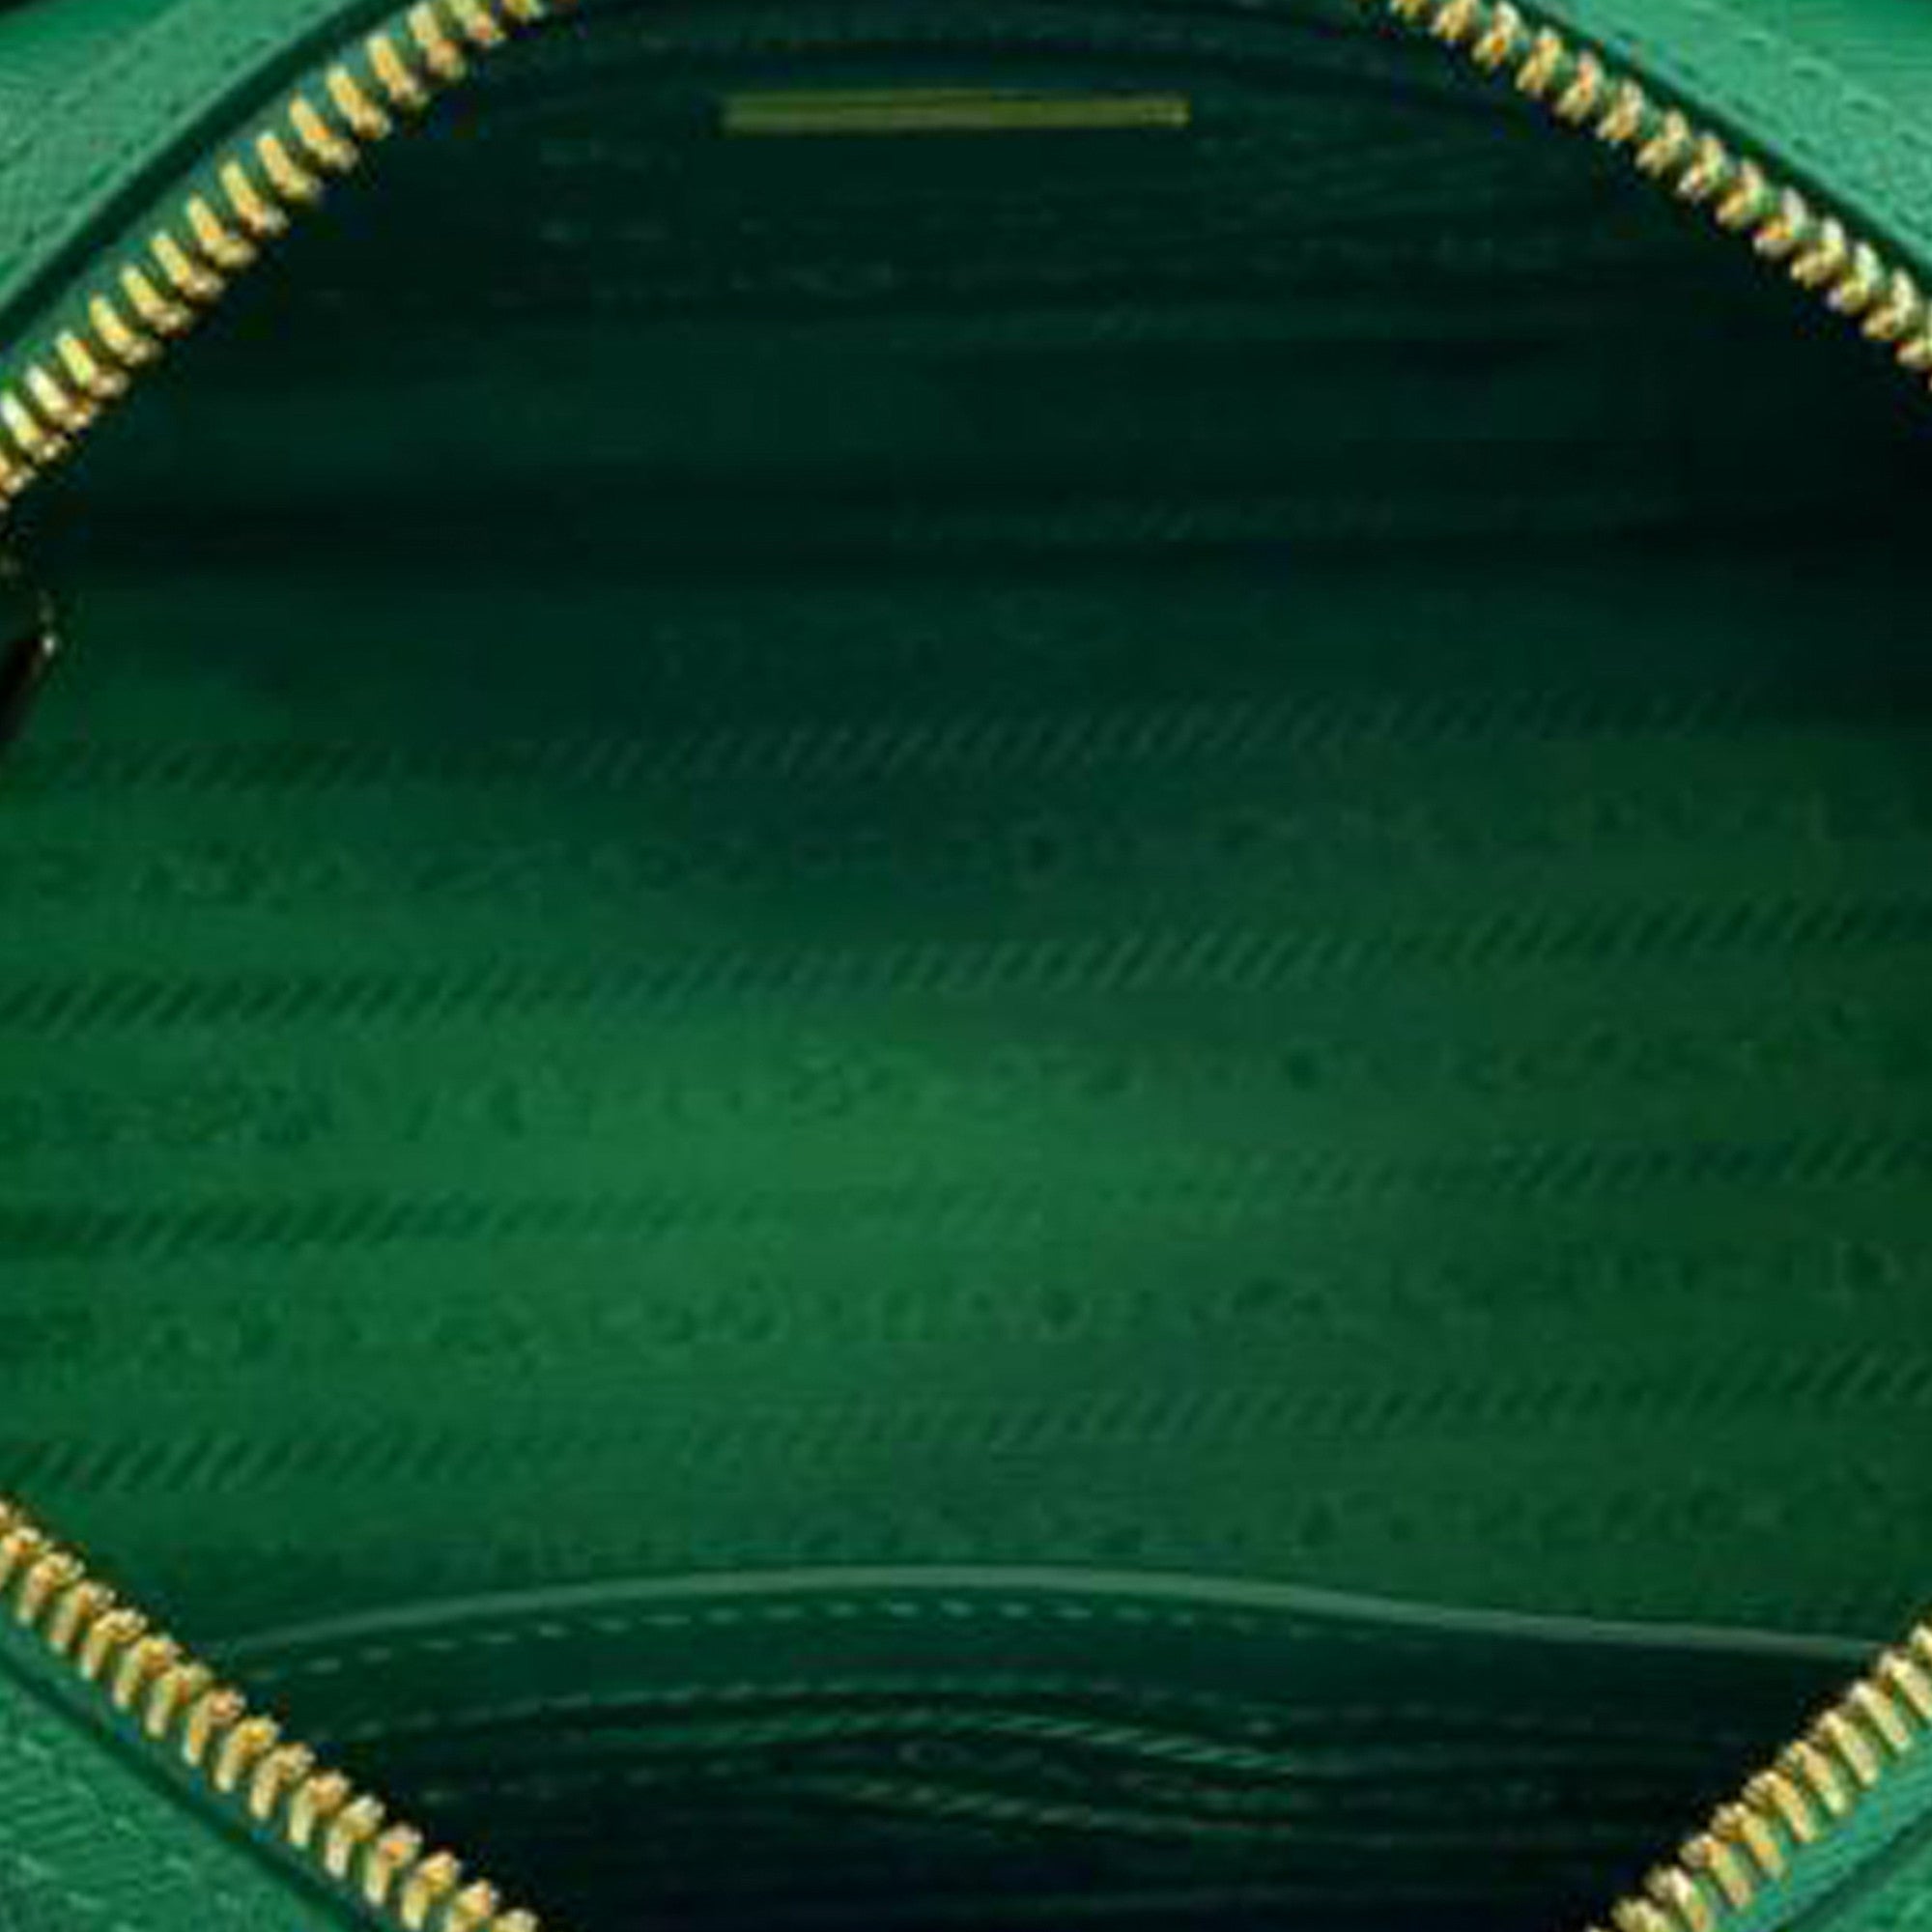 Prada Matinée Large Saffiano Leather Crossbody Top Handle Bag